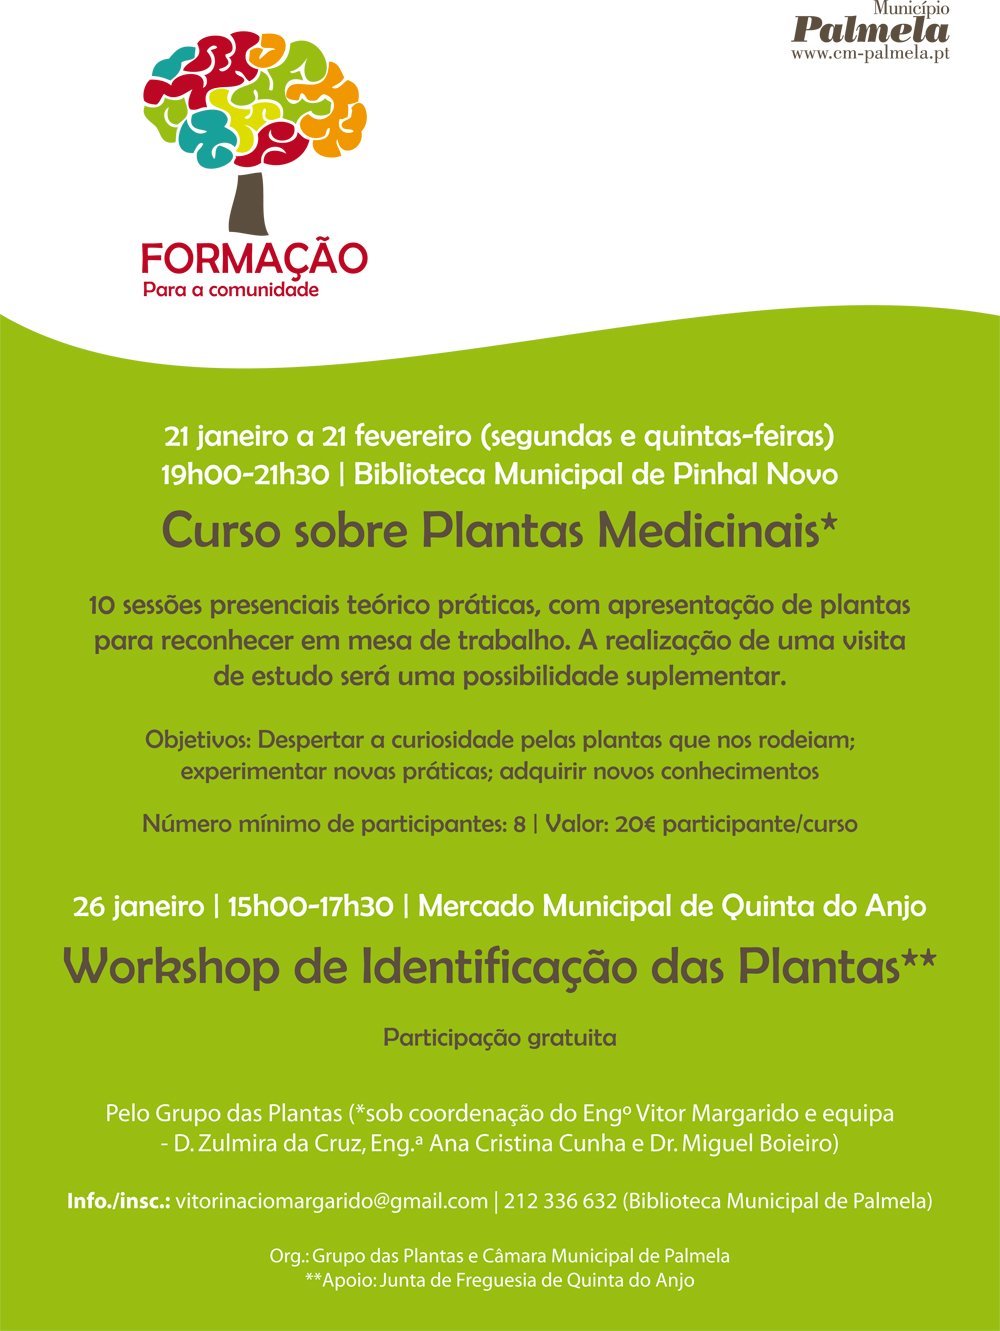 CURSO PLANTAS MEDICINAIS / WORKSHOP IDENTIFICAÇÃO DE PLANTAS